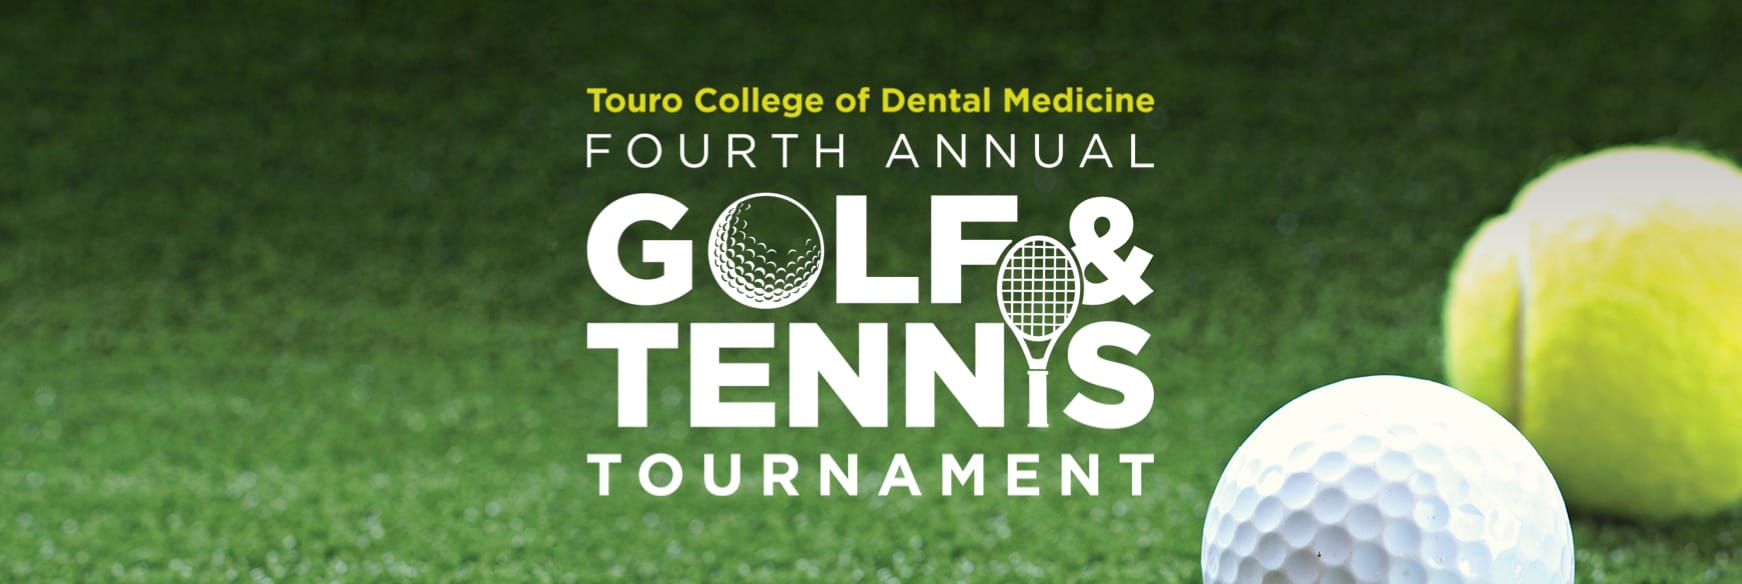 Fourth Annual Golf & Tennis Tournament